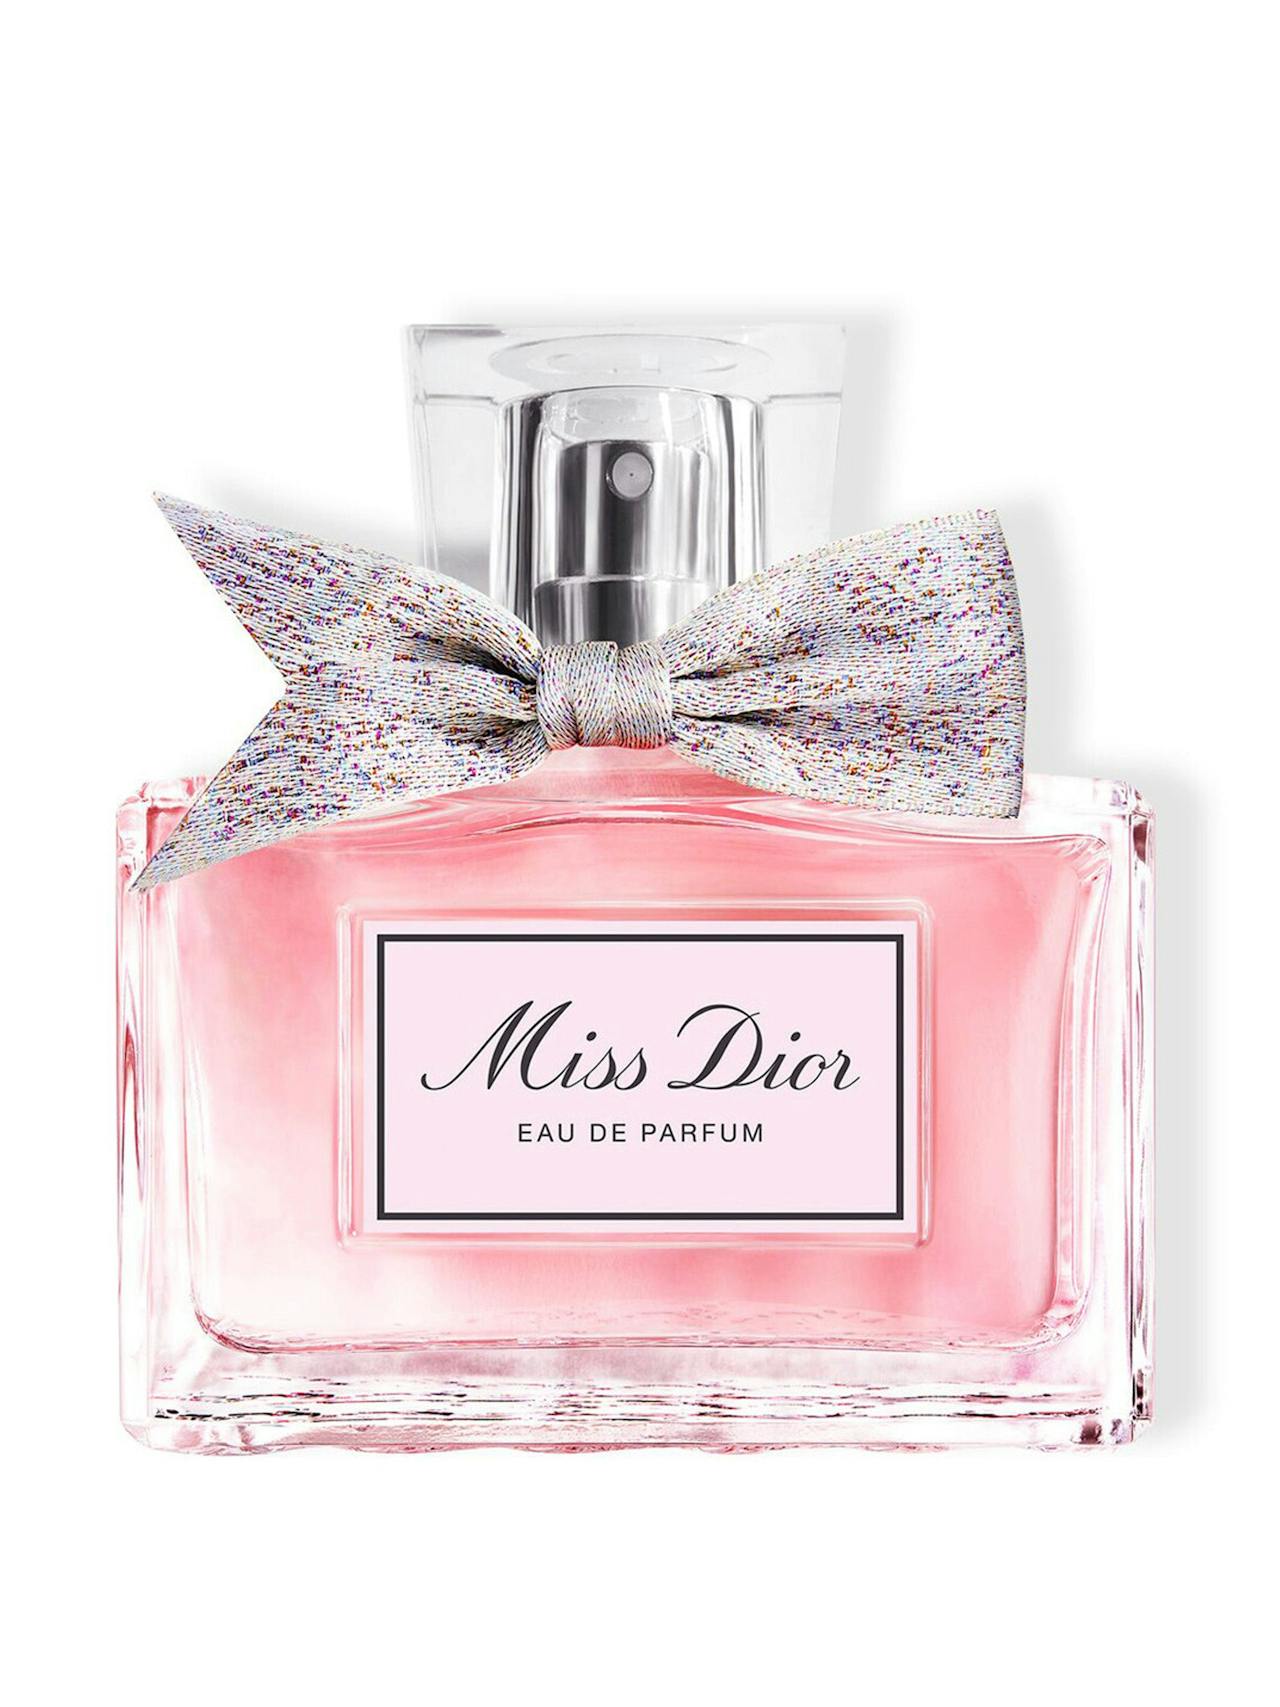 Miss Dior eau de parfum